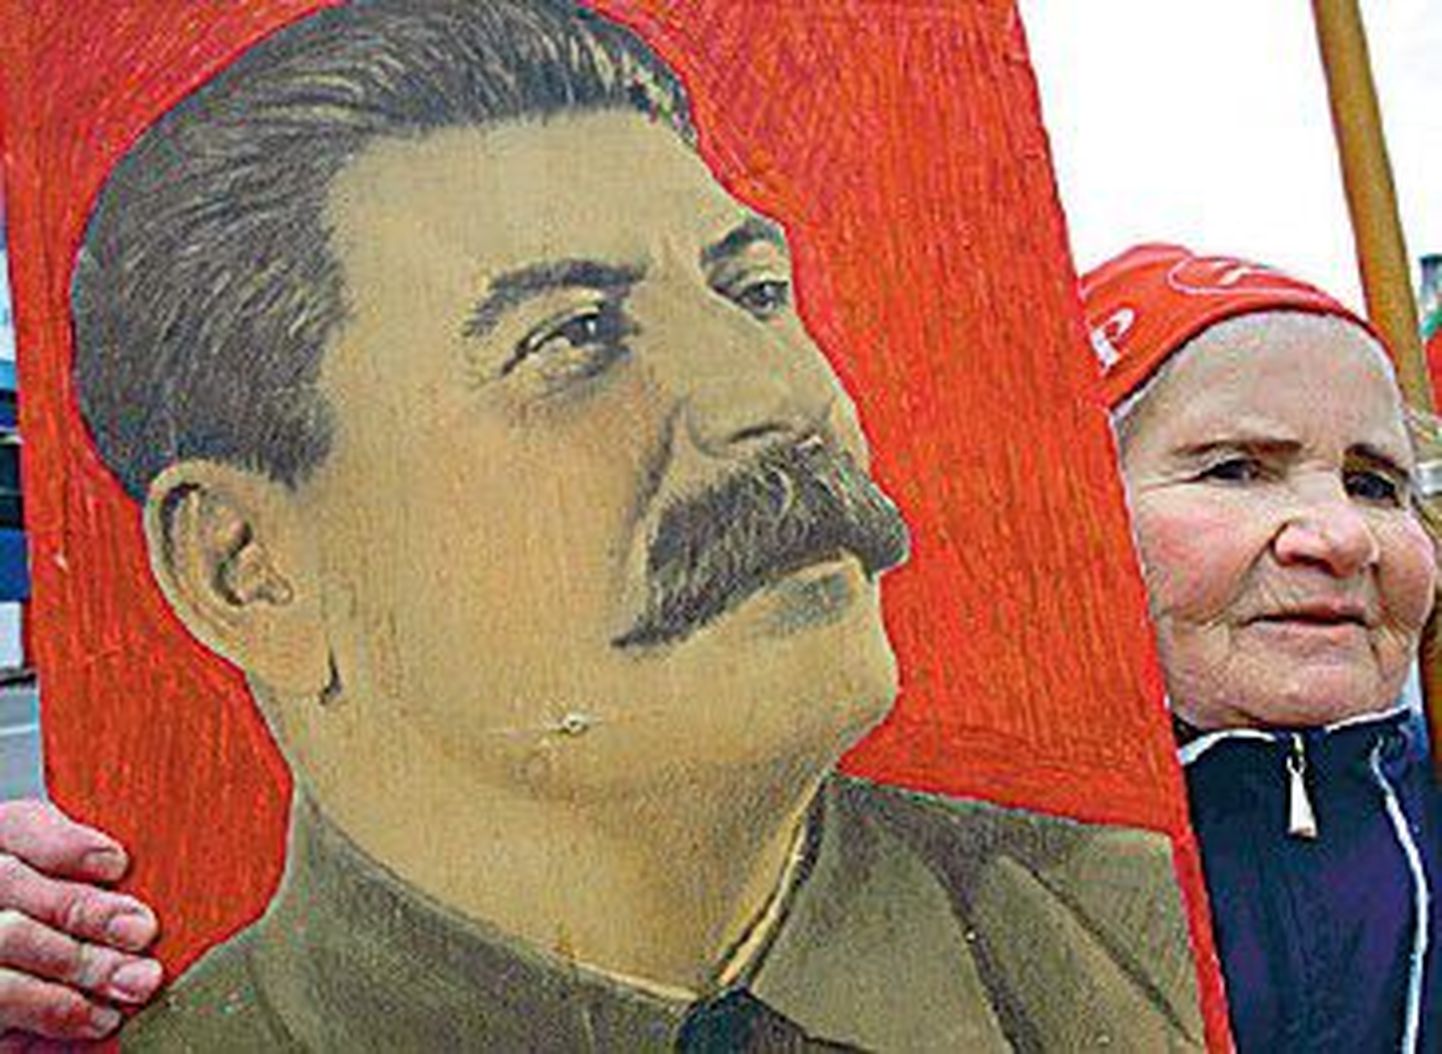 Пожилая женщина с портретом Иосифа Сталина - фактического главы советского государства в 1922-1953 годах. Только в годы «Большого террора» 1937-1938 годов под руководством и с согласия Сталина были арестованы полтора миллиона человек, из них около 700 тысяч приговорены к расстрелу.